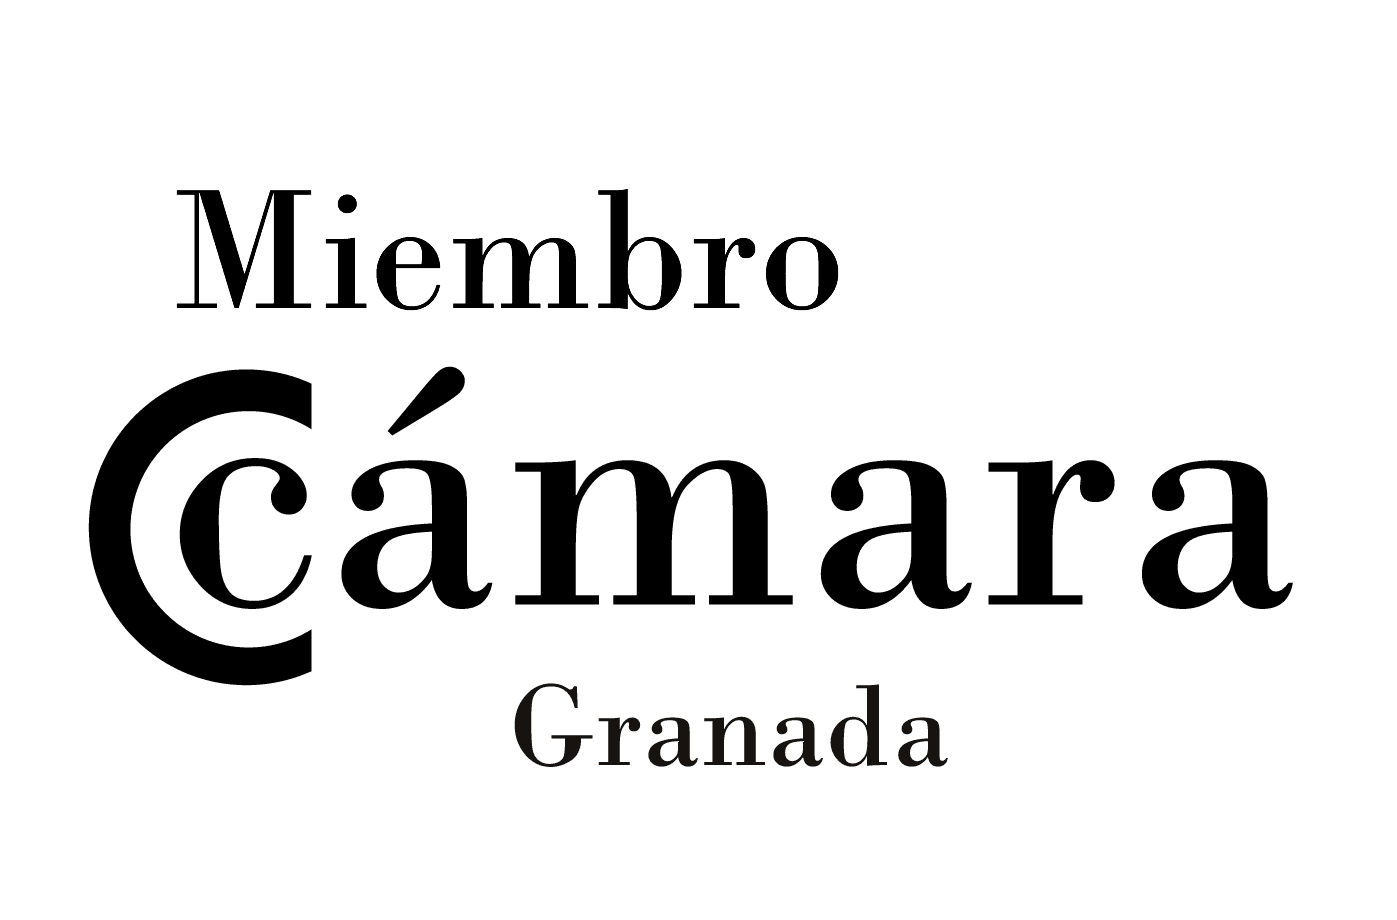 Miembro asociado a la Cámara de Comercio de Granada